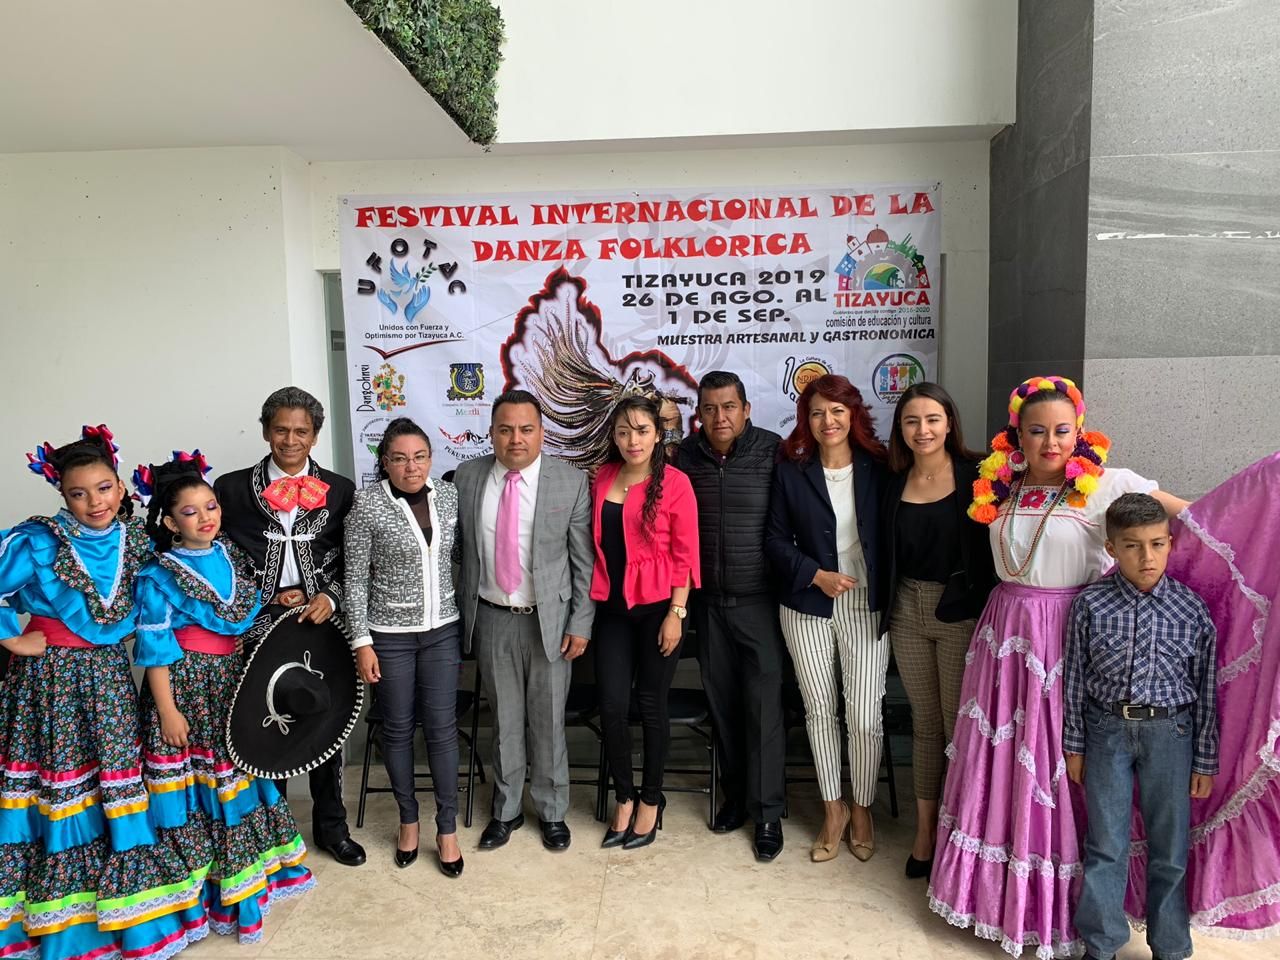 Festival internacional de danza folklorica Dangonhei ’Fiesta Grande de la Danza 2019’ Tizayuca, Hidalgo